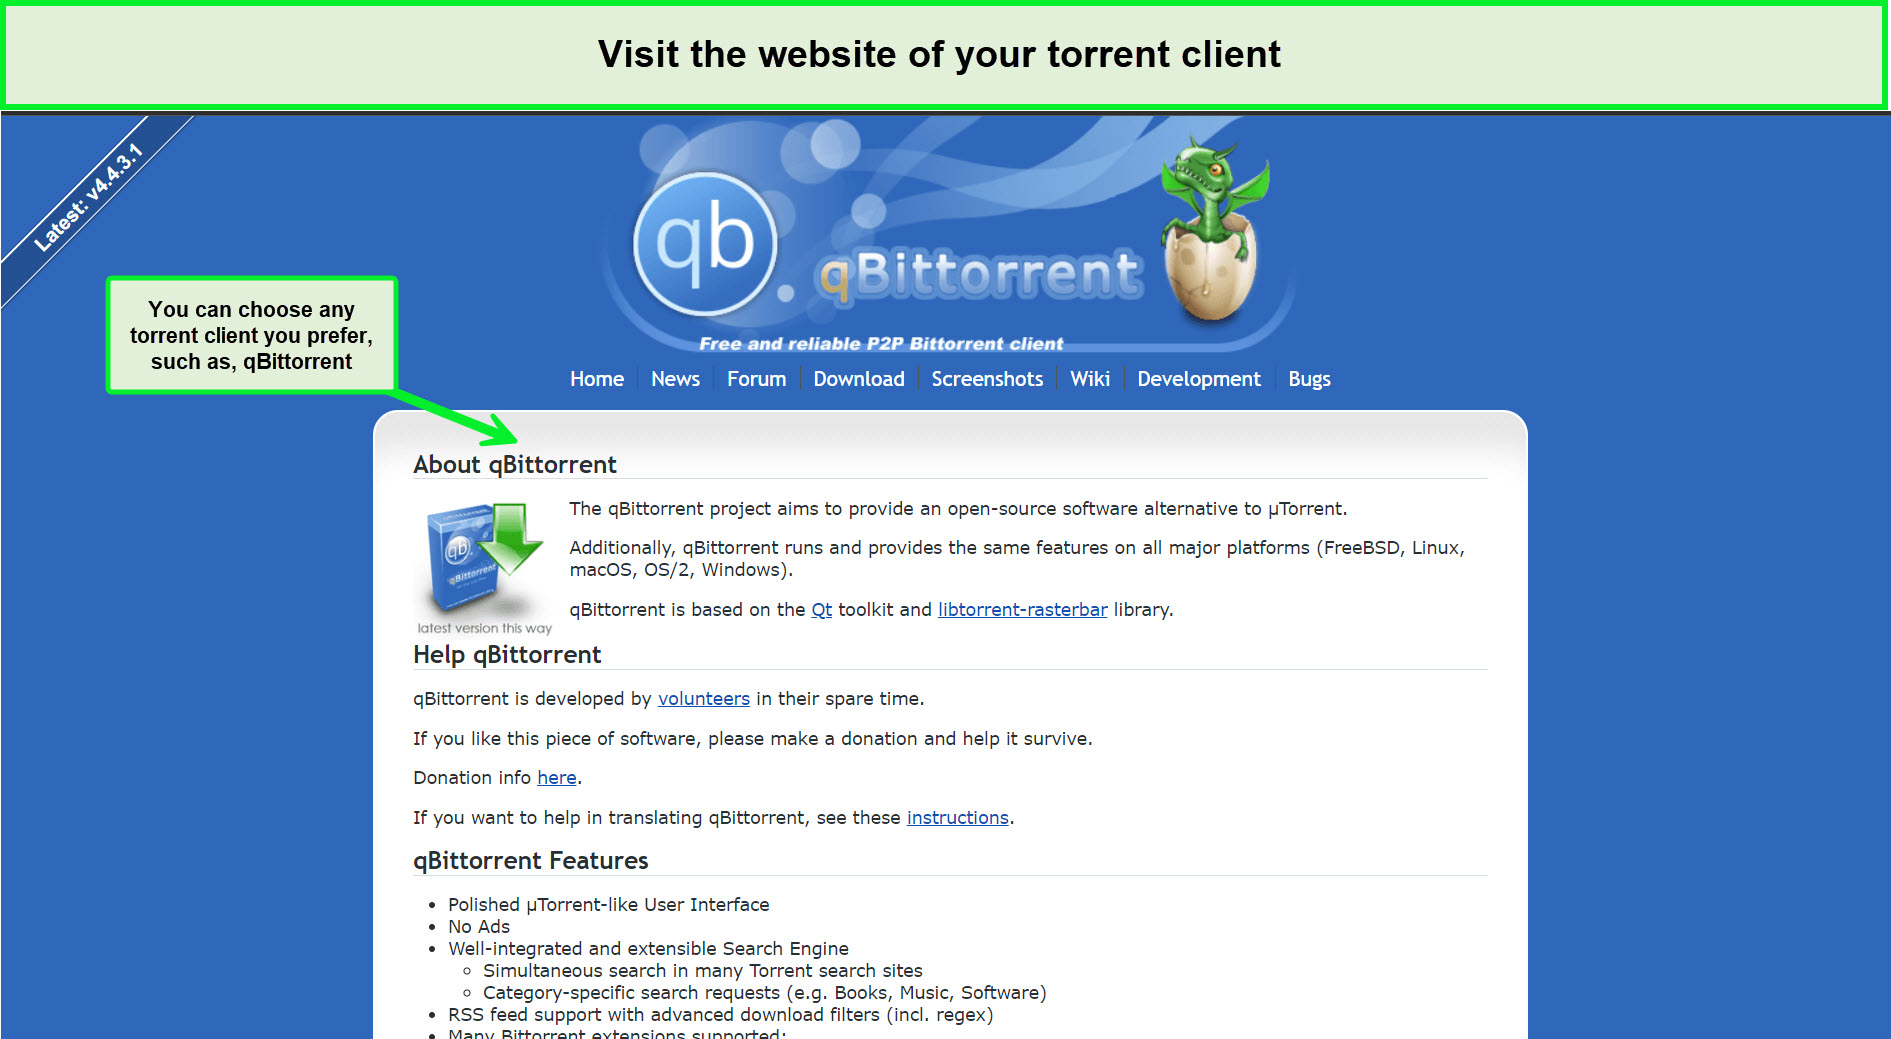 torrent-client-in-UK